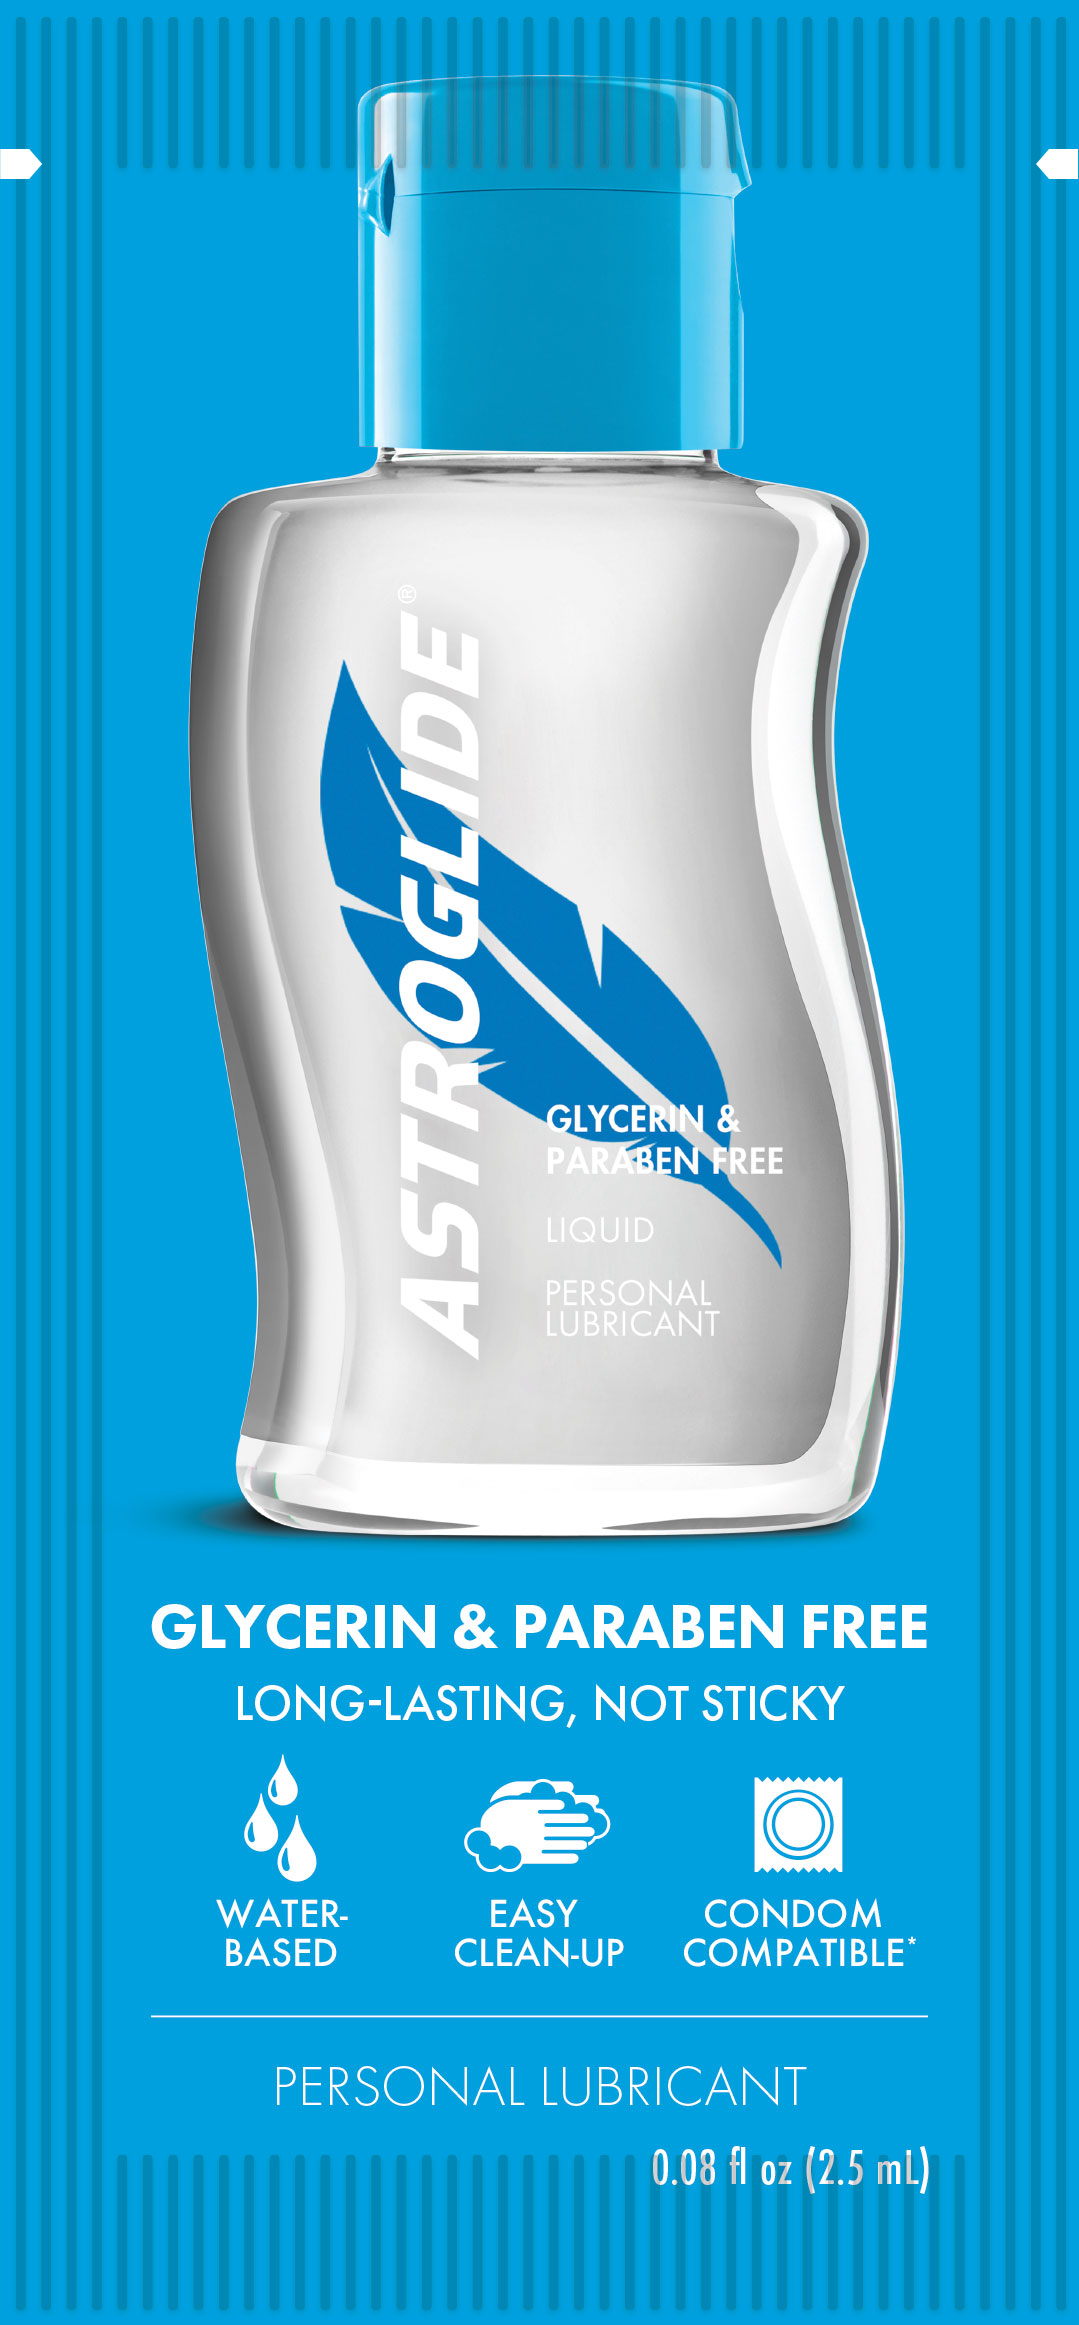 ASTROGLIDE Glycerin & Paraben Free Liquid